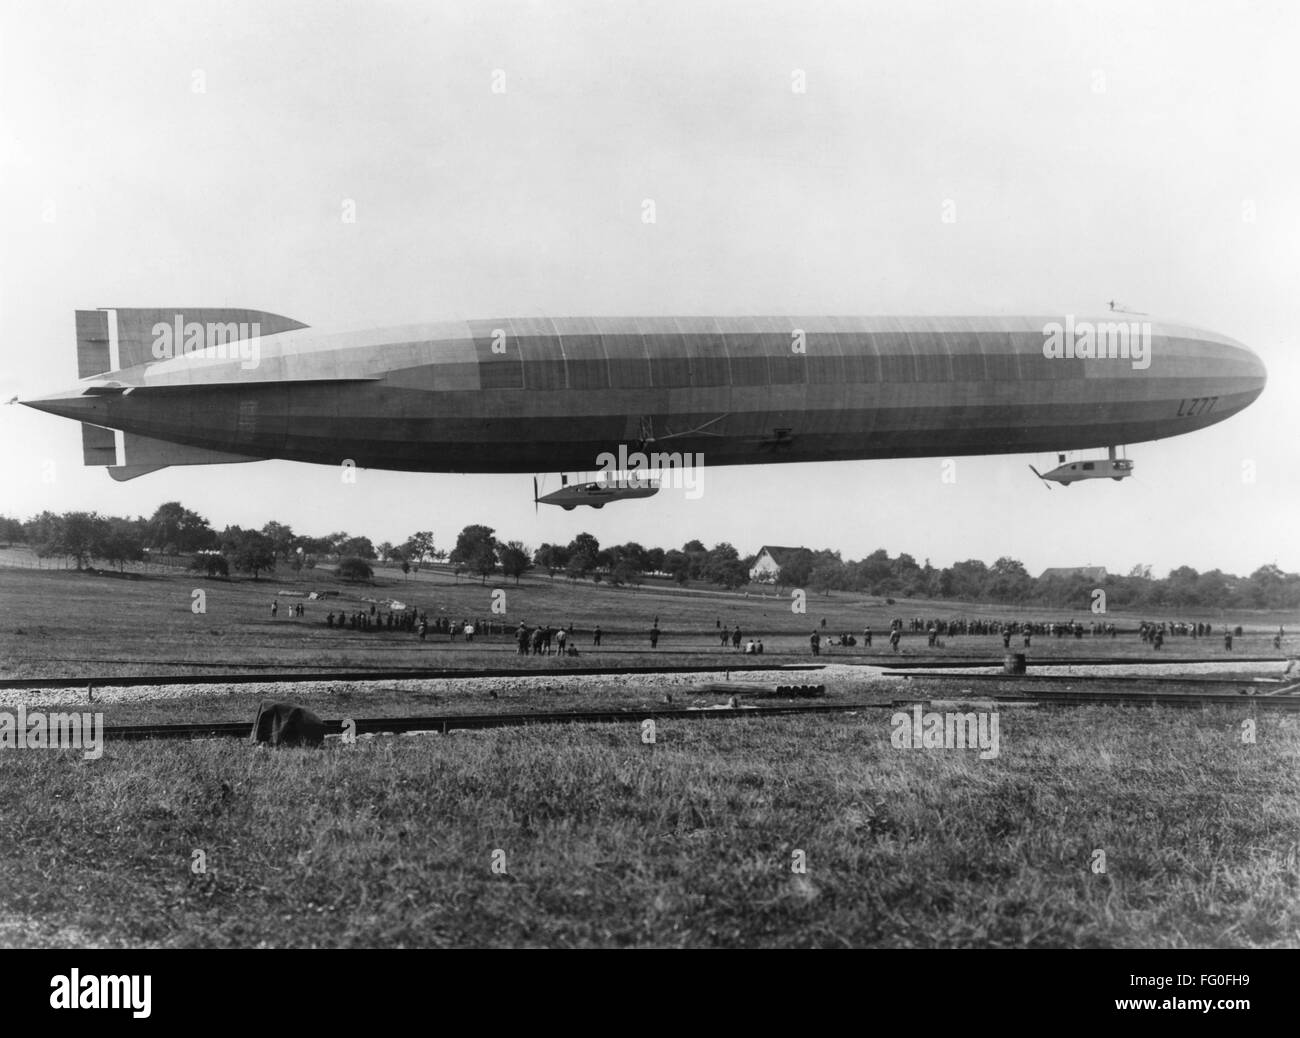 La I Guerra Mundial: Zeppelin. /NA Alemán LZ77 dirigible Zeppelin durante la I Guerra Mundial Fotografía, c1916. Foto de stock